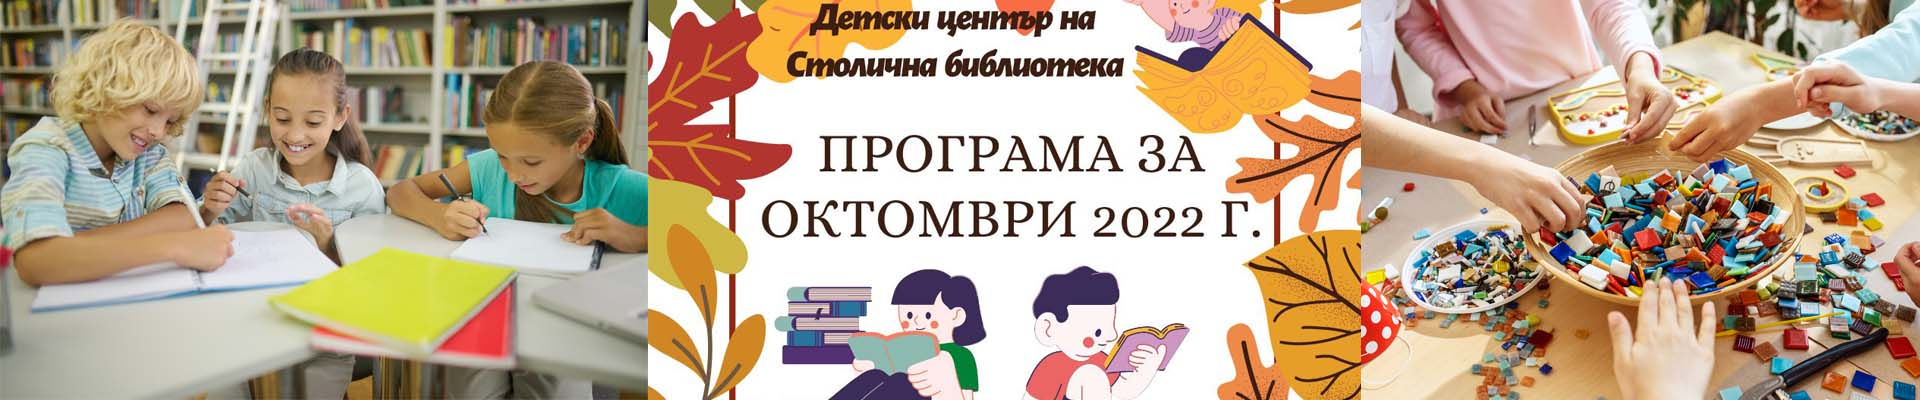 Програма на Детски център на Столична библиотека  за месец октомври 2022 г.